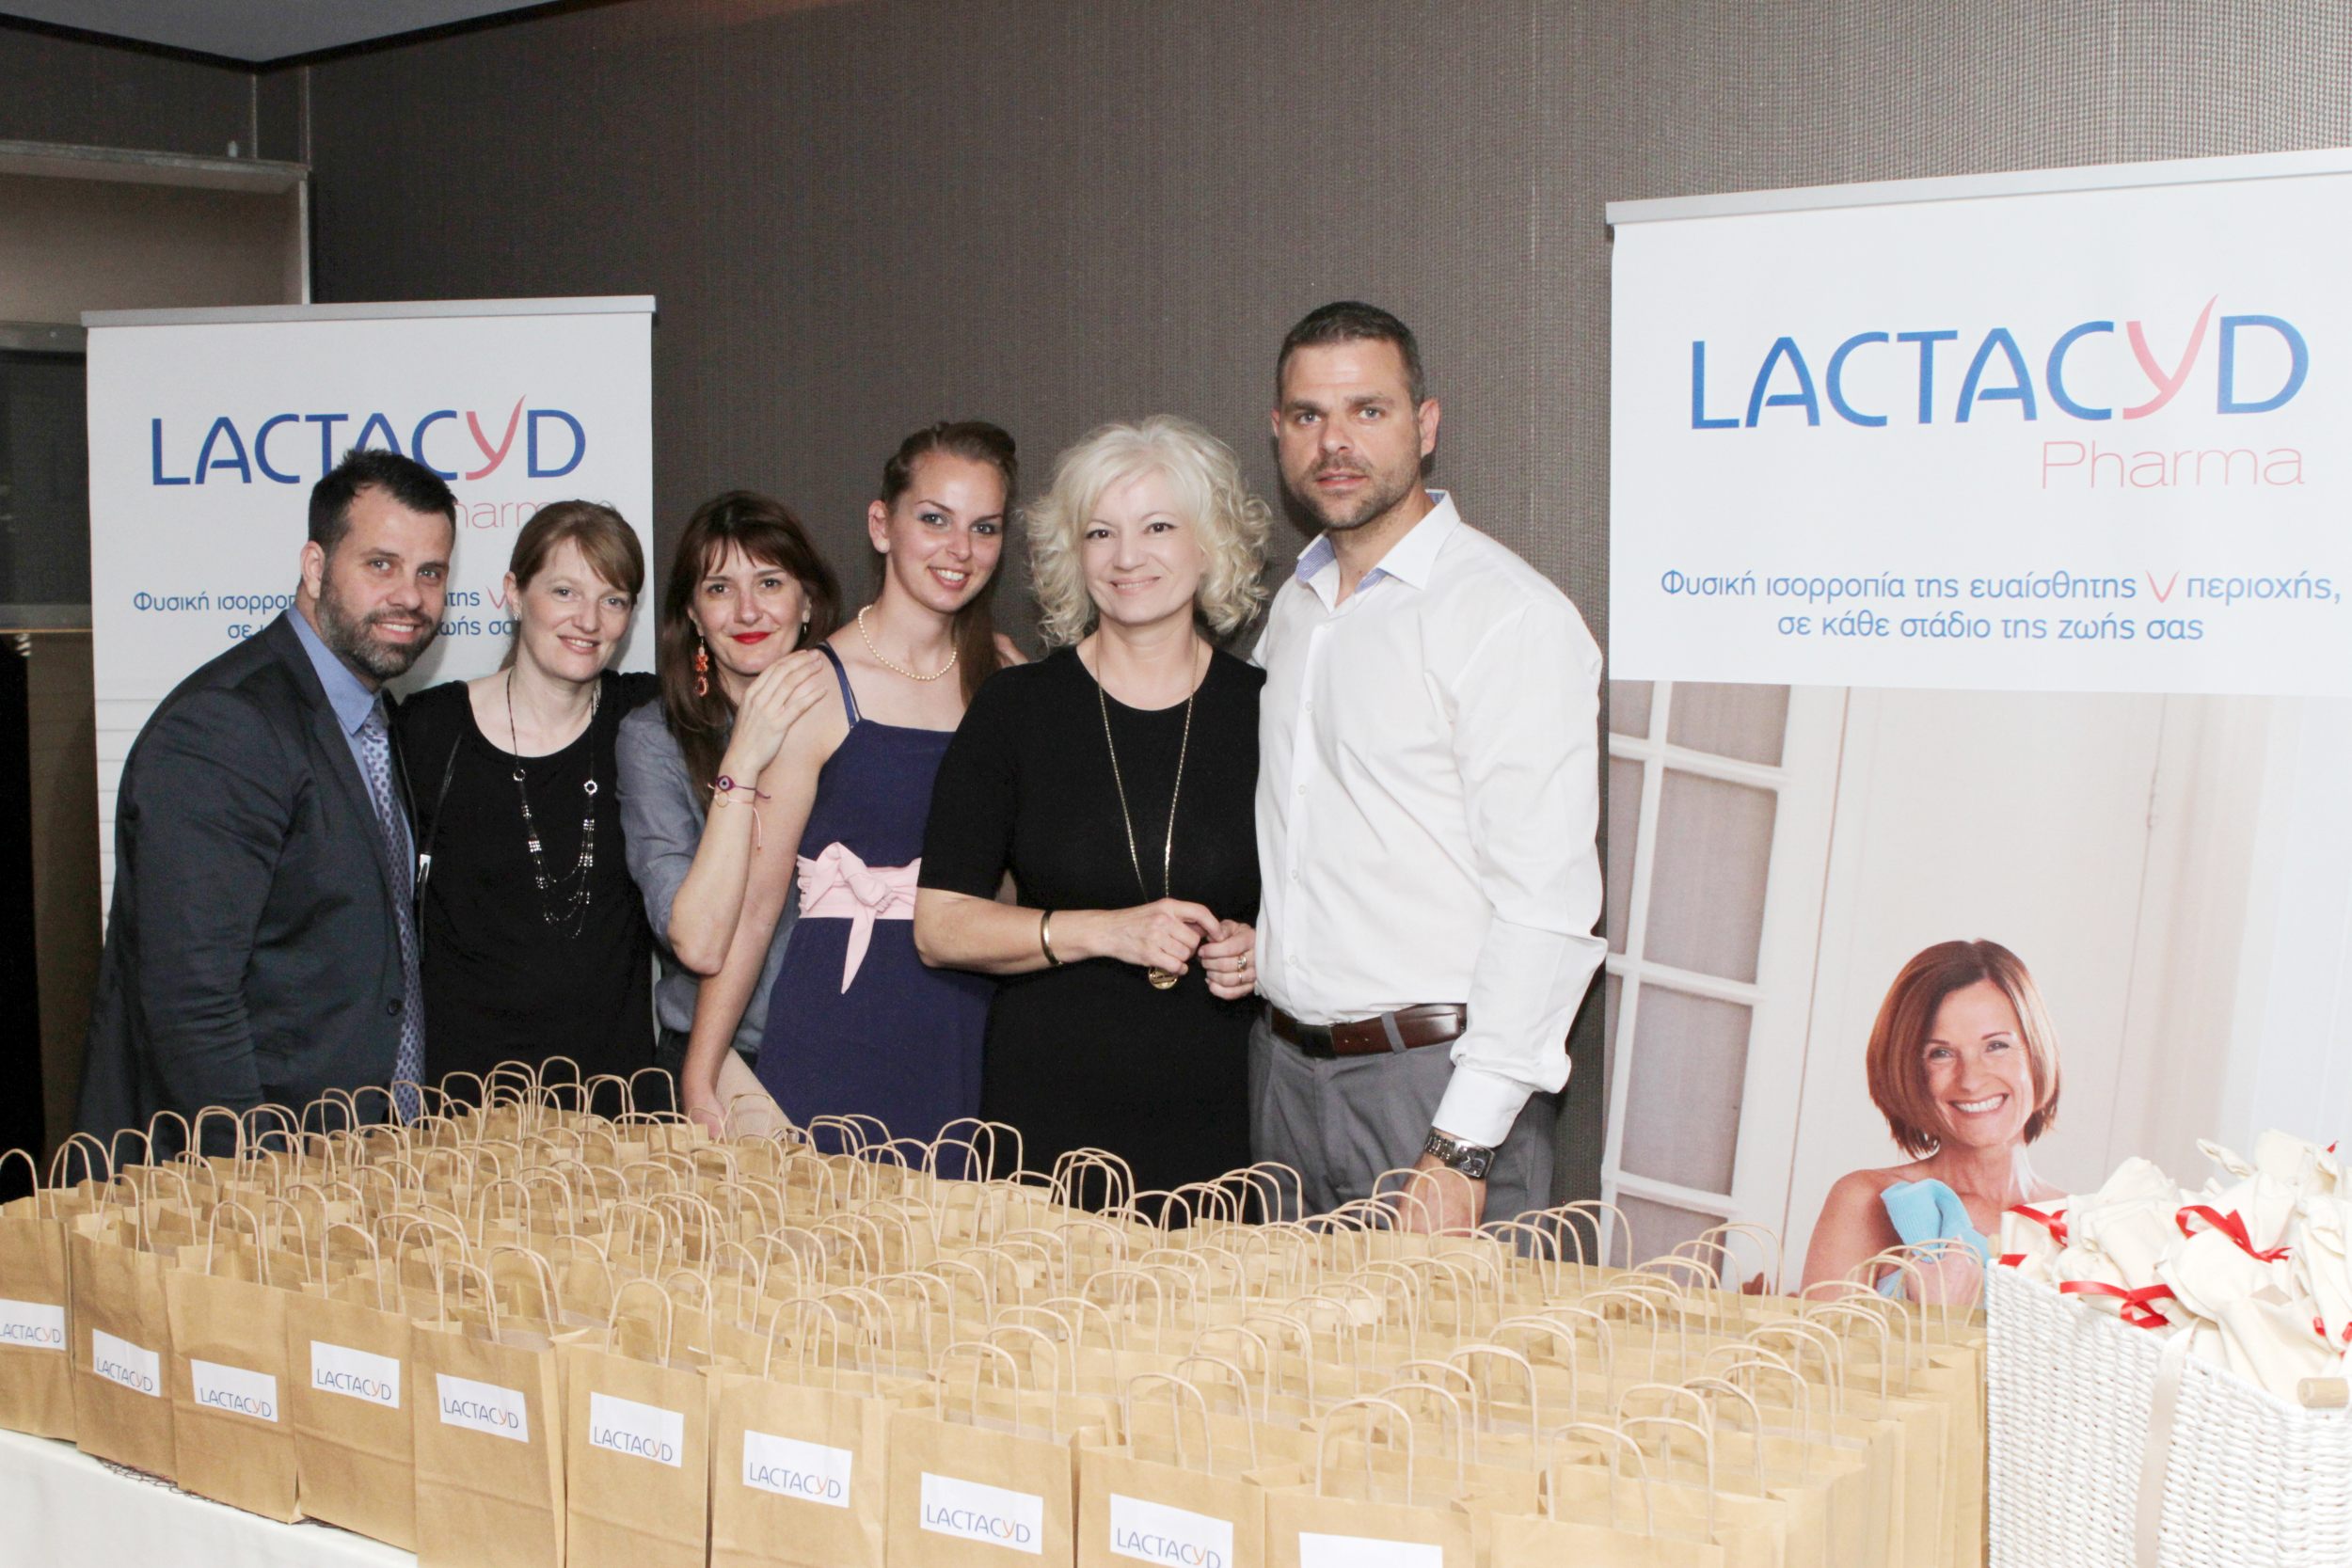 Το Lactacyd αποδεικνύει τη στήριξη του στη γυναίκα σε κάθε στάδιο της ζωής της